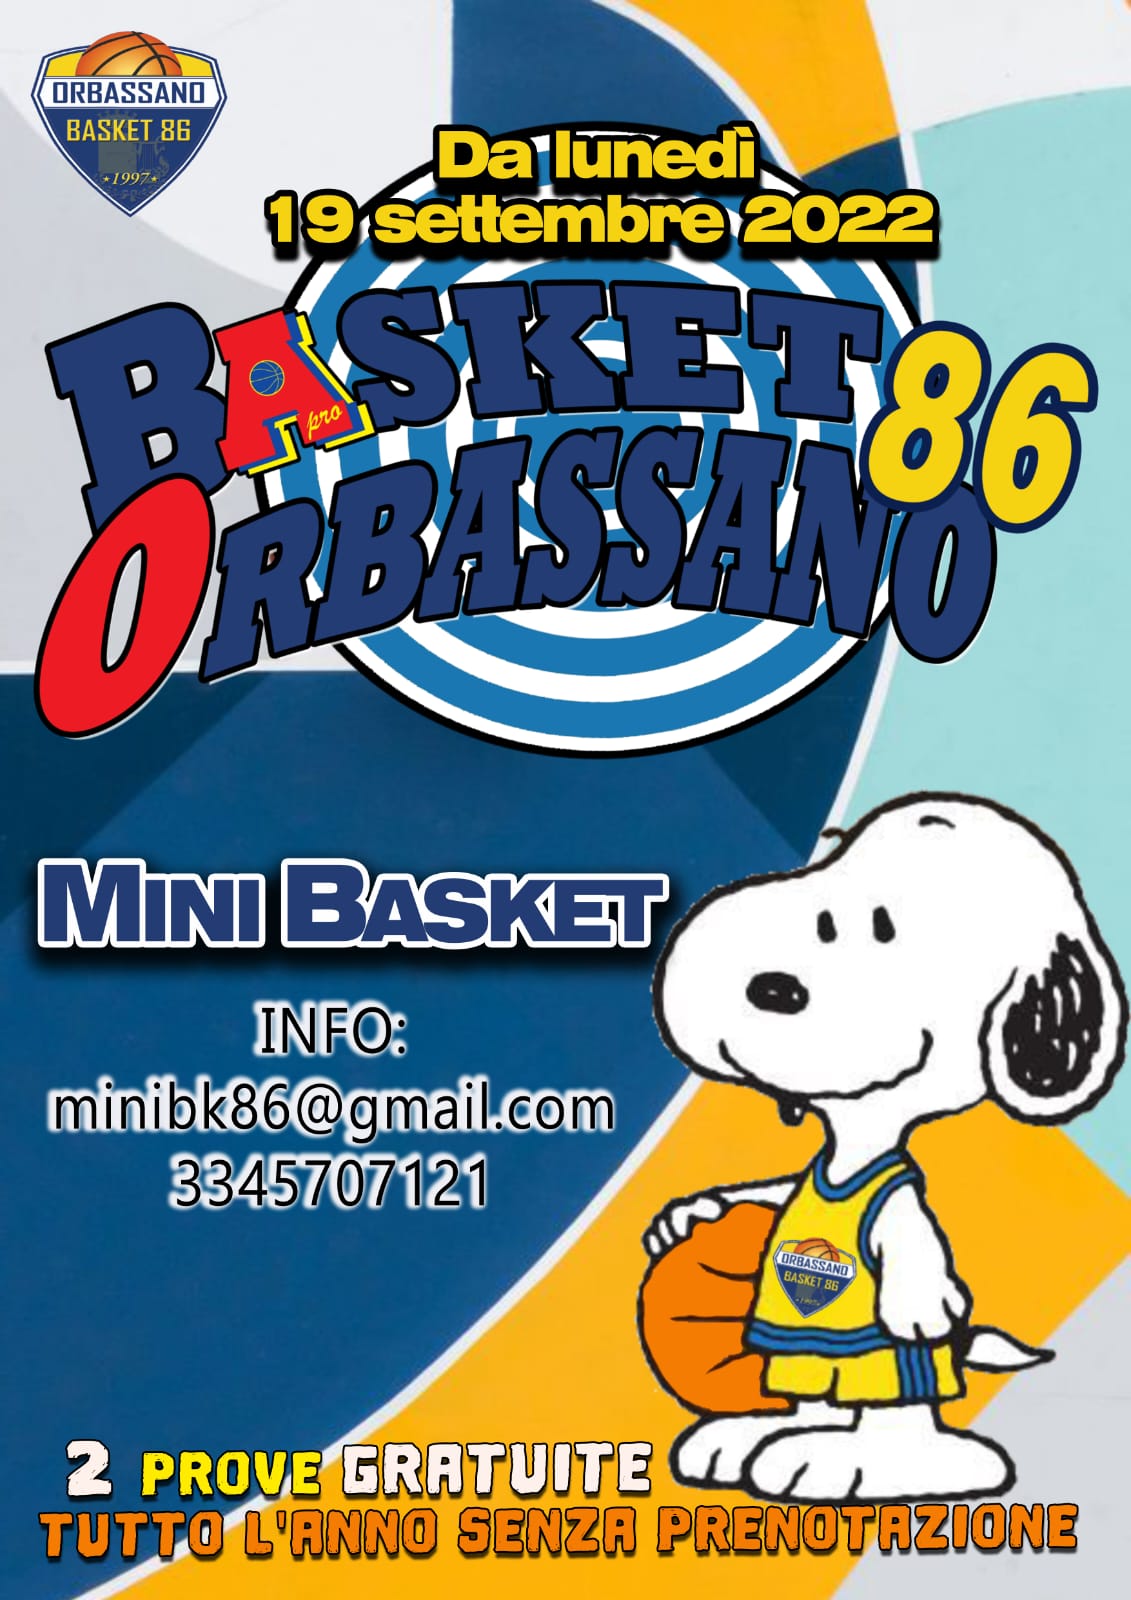 Basket86 Orbassano